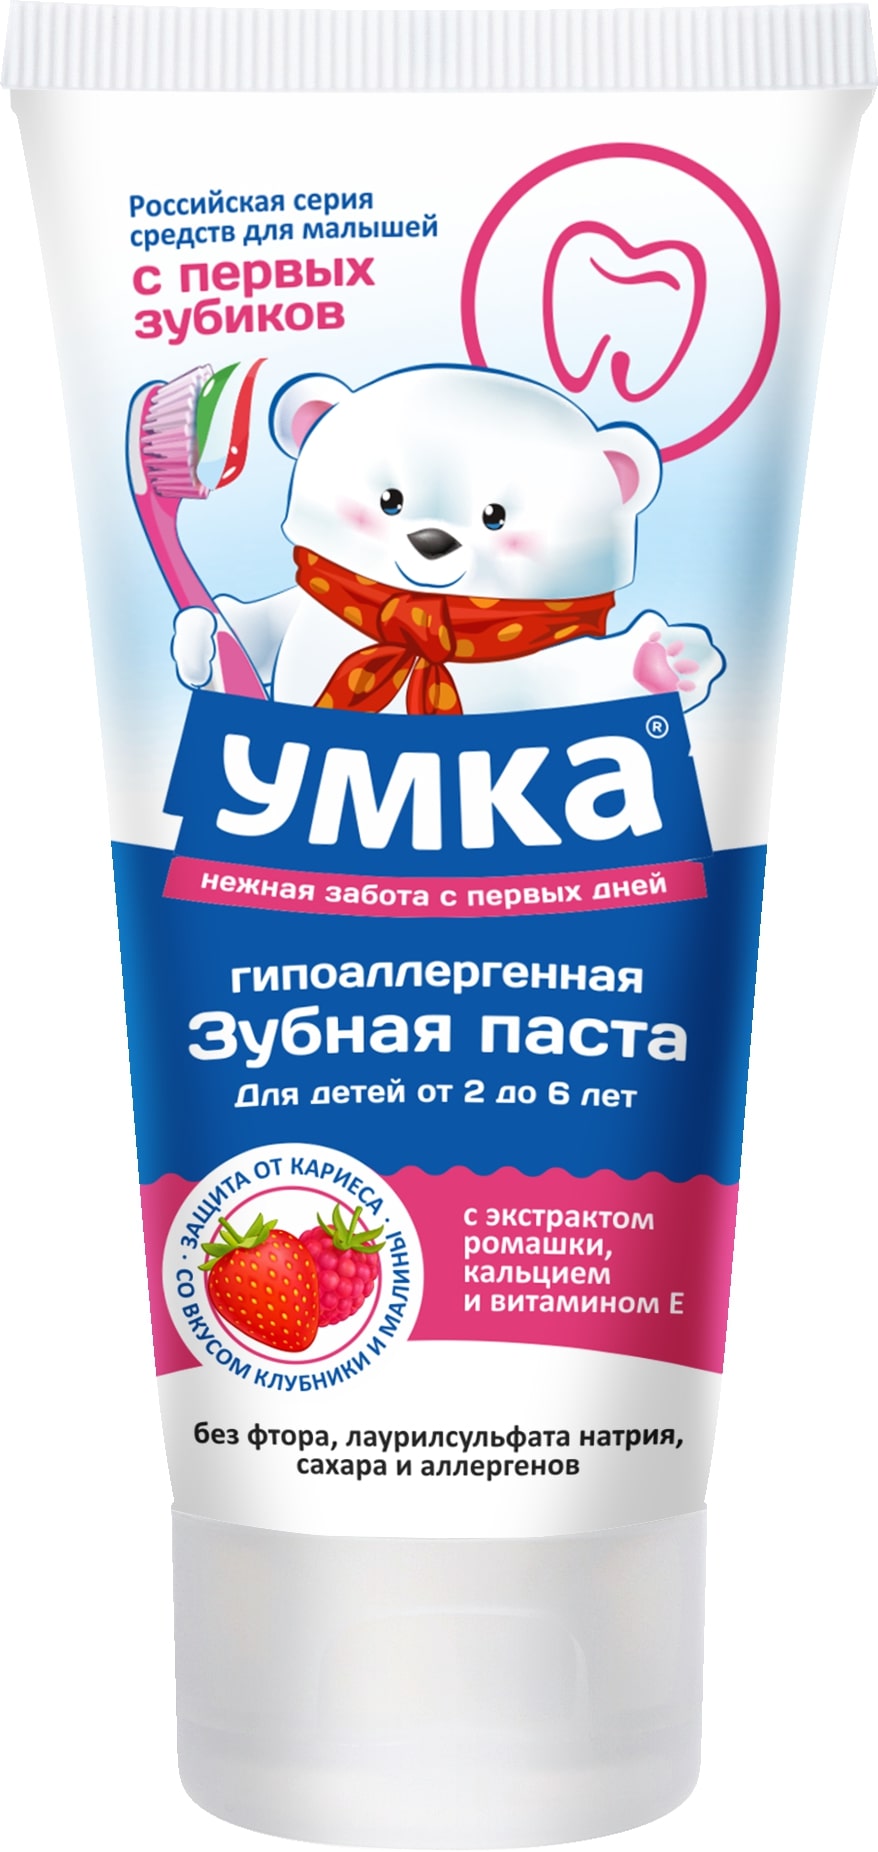 Зубная паста Умкa 2-6 ромашка,витамин Е - фото 1